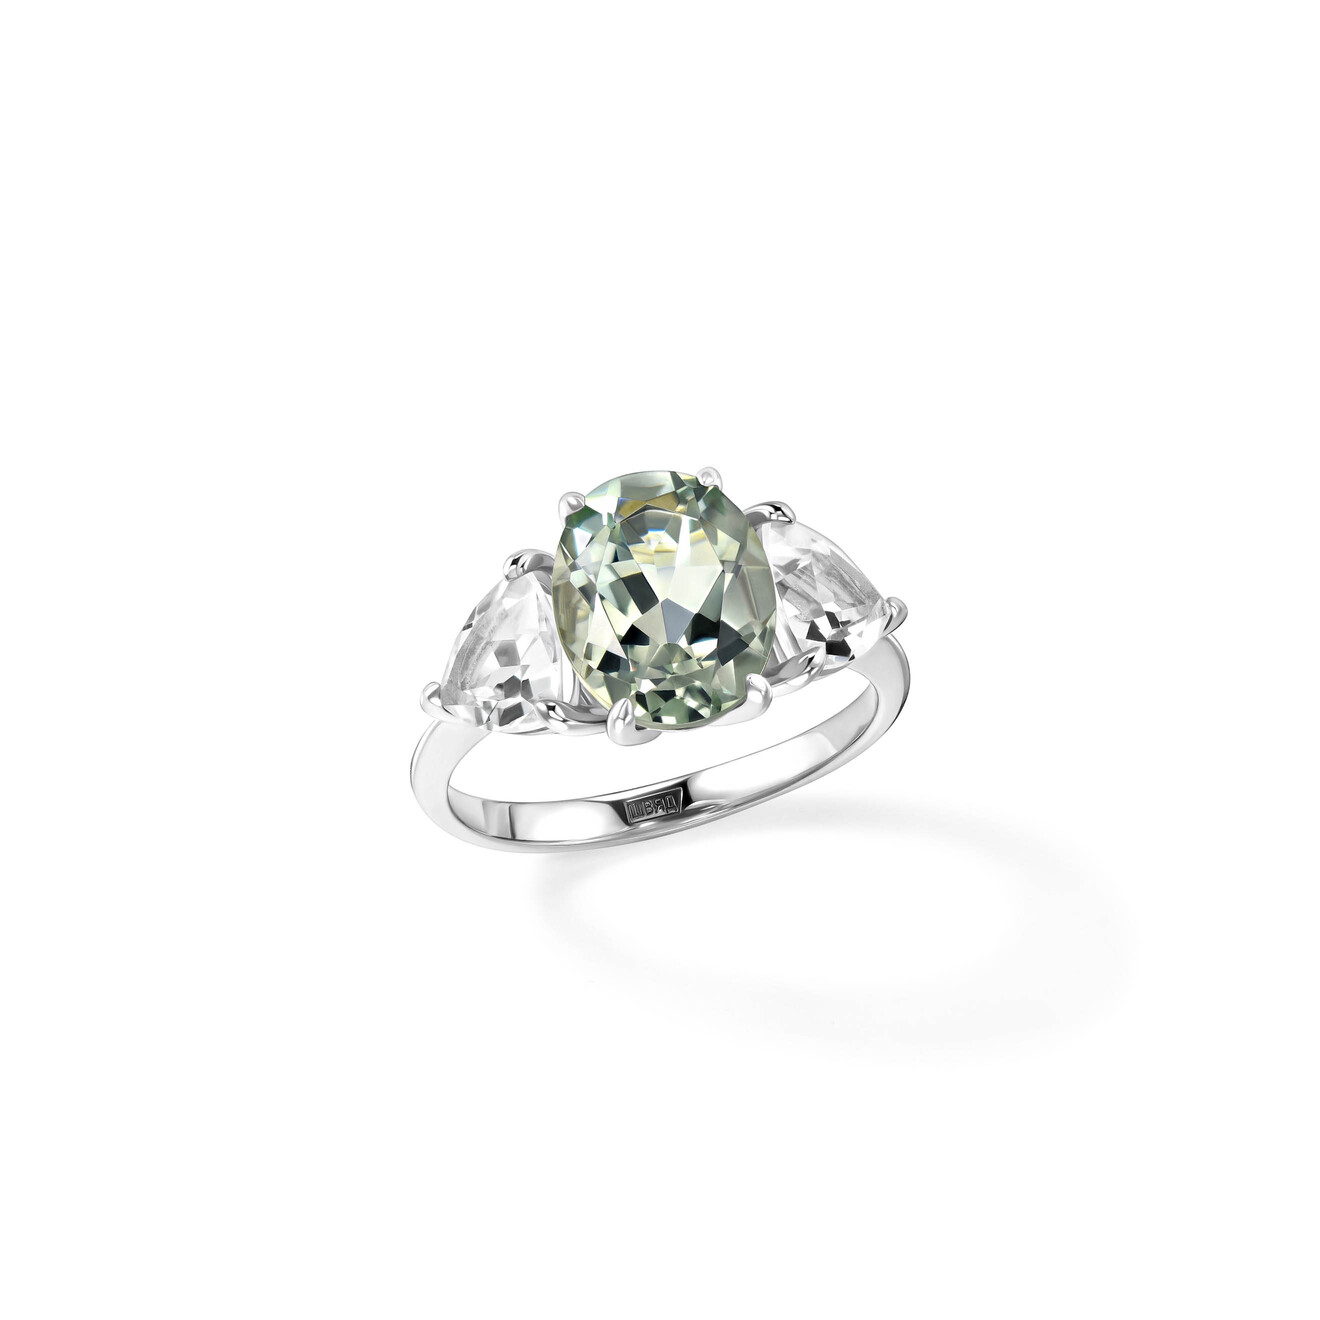 Secrets Кольцо-трио из серебра с зелёным аметистом secrets кольцо из серебра с хрустальным сердцем в позолоте